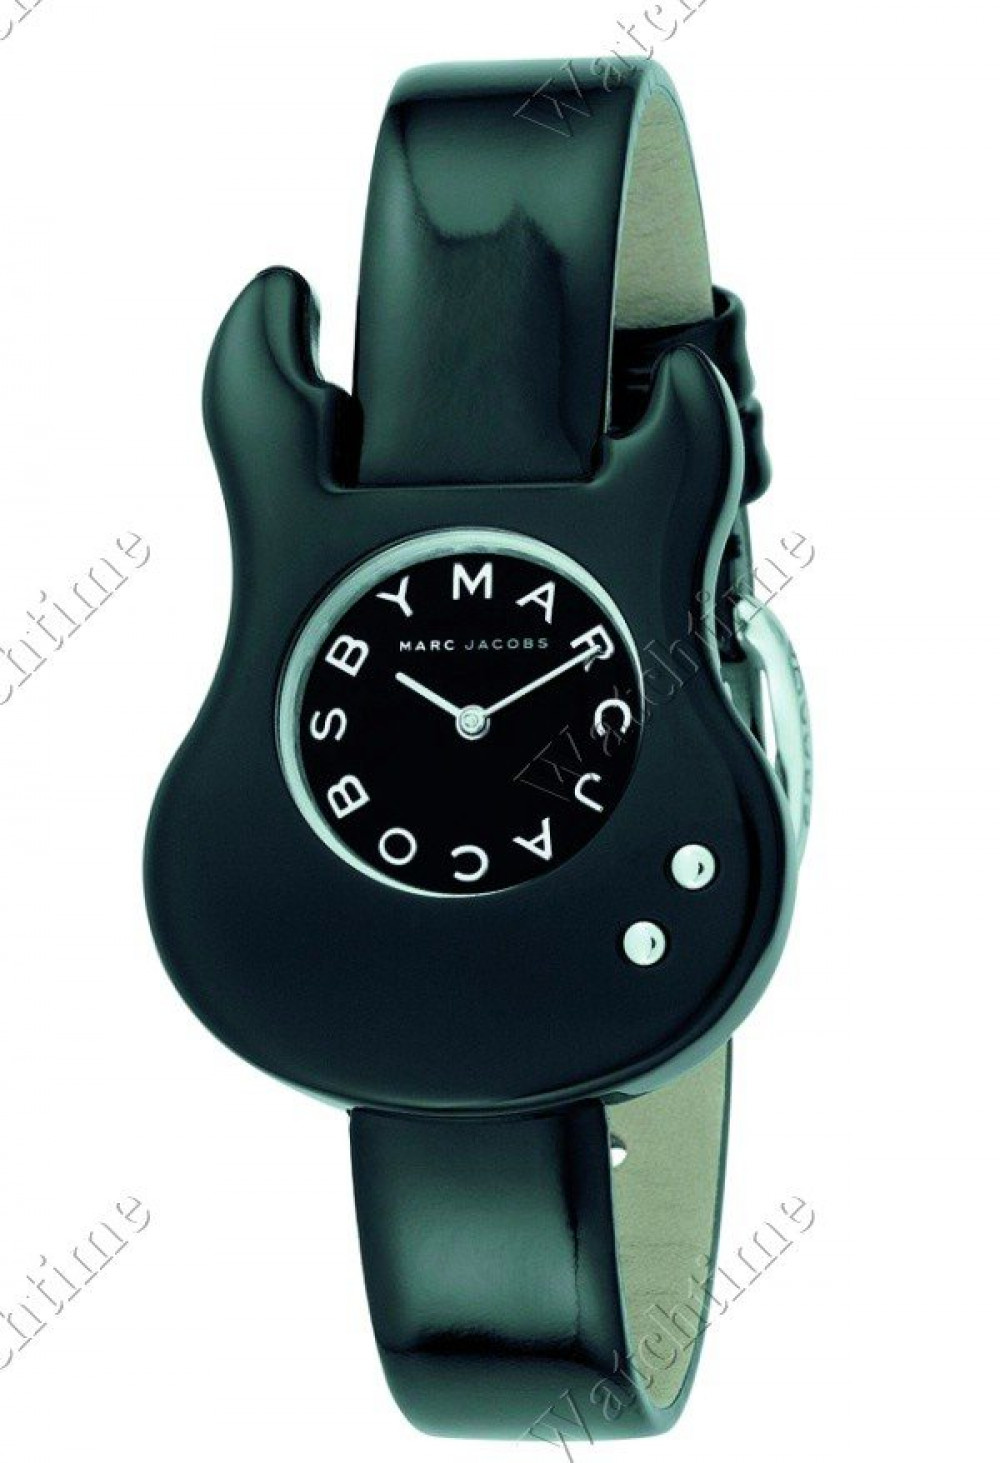 Zegarek firmy Marc by Marc Jacobs, model MBM 4000